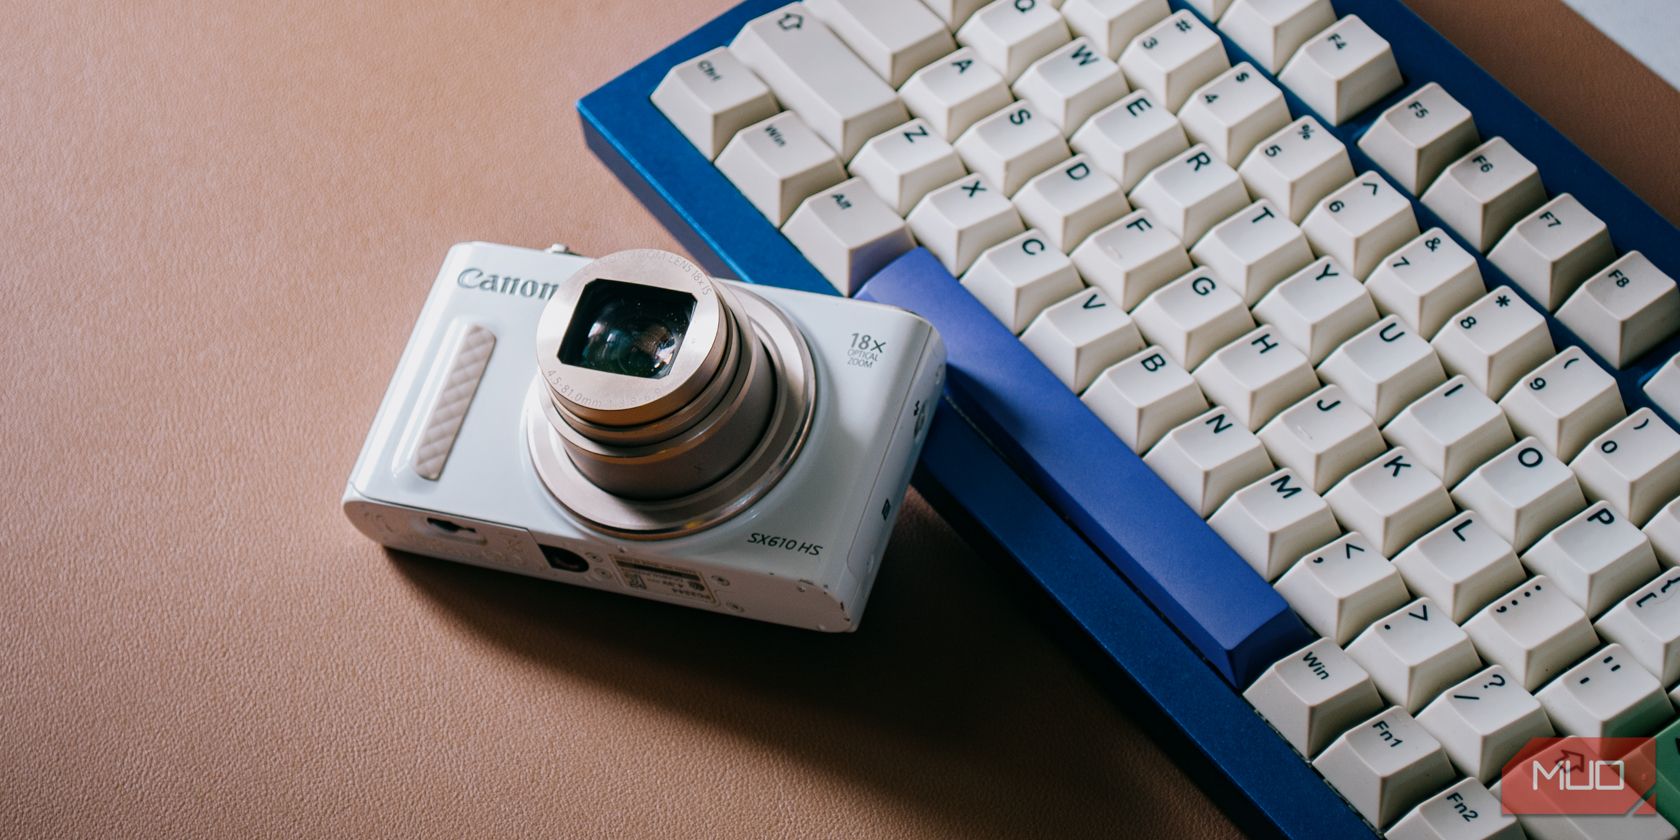 Máy ảnh Canon với ống kính mở rộng bên cạnh bàn phím